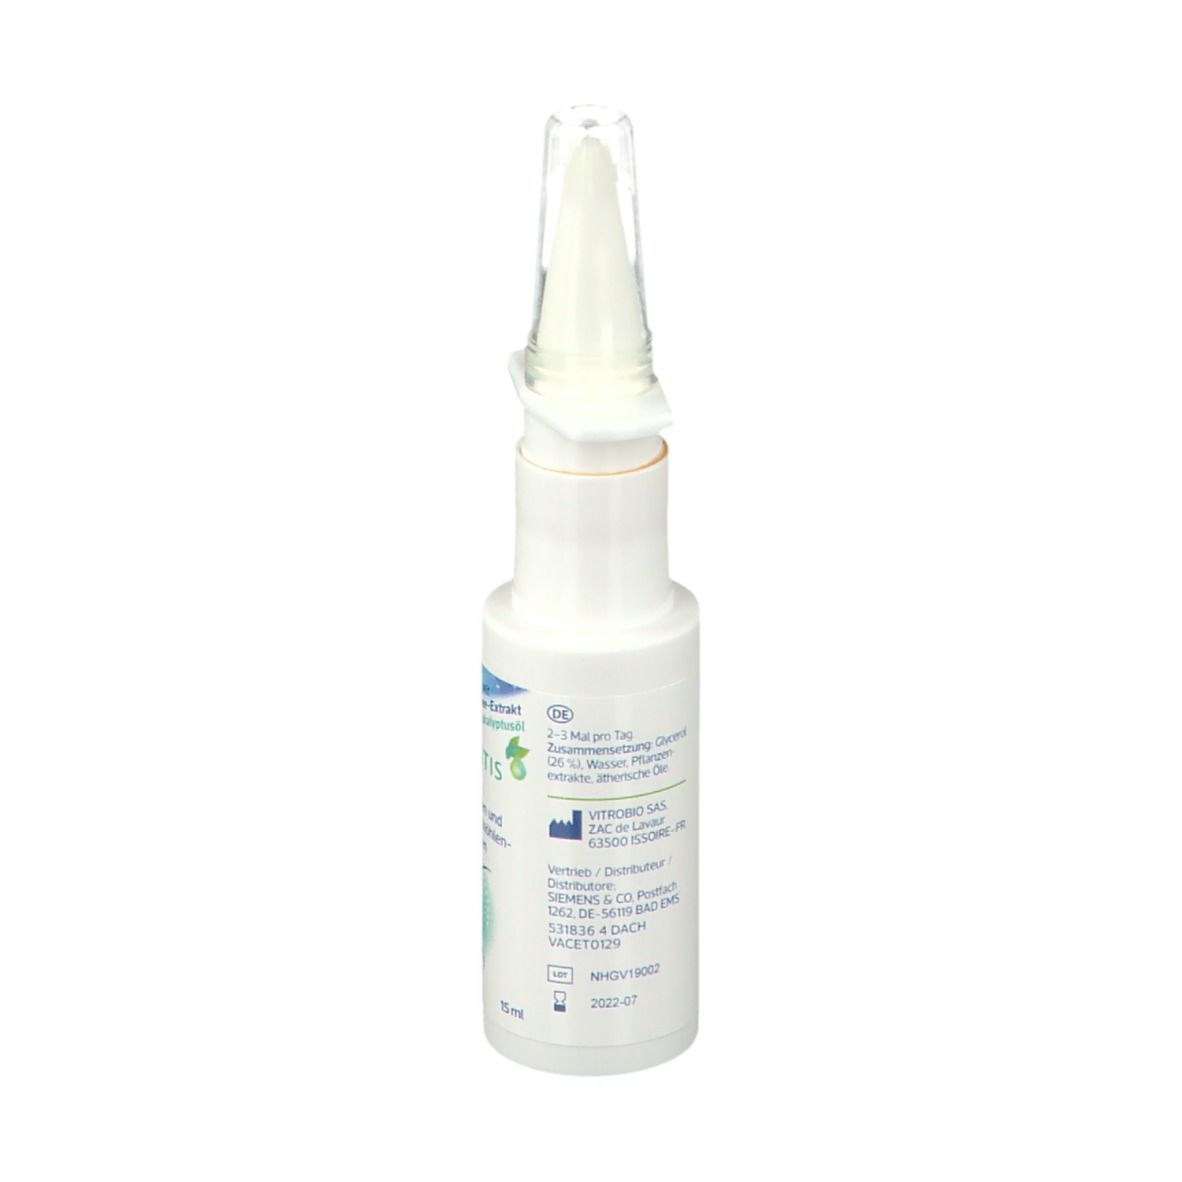 Emser® Sinusitis Spray mit Eukalyptusöl